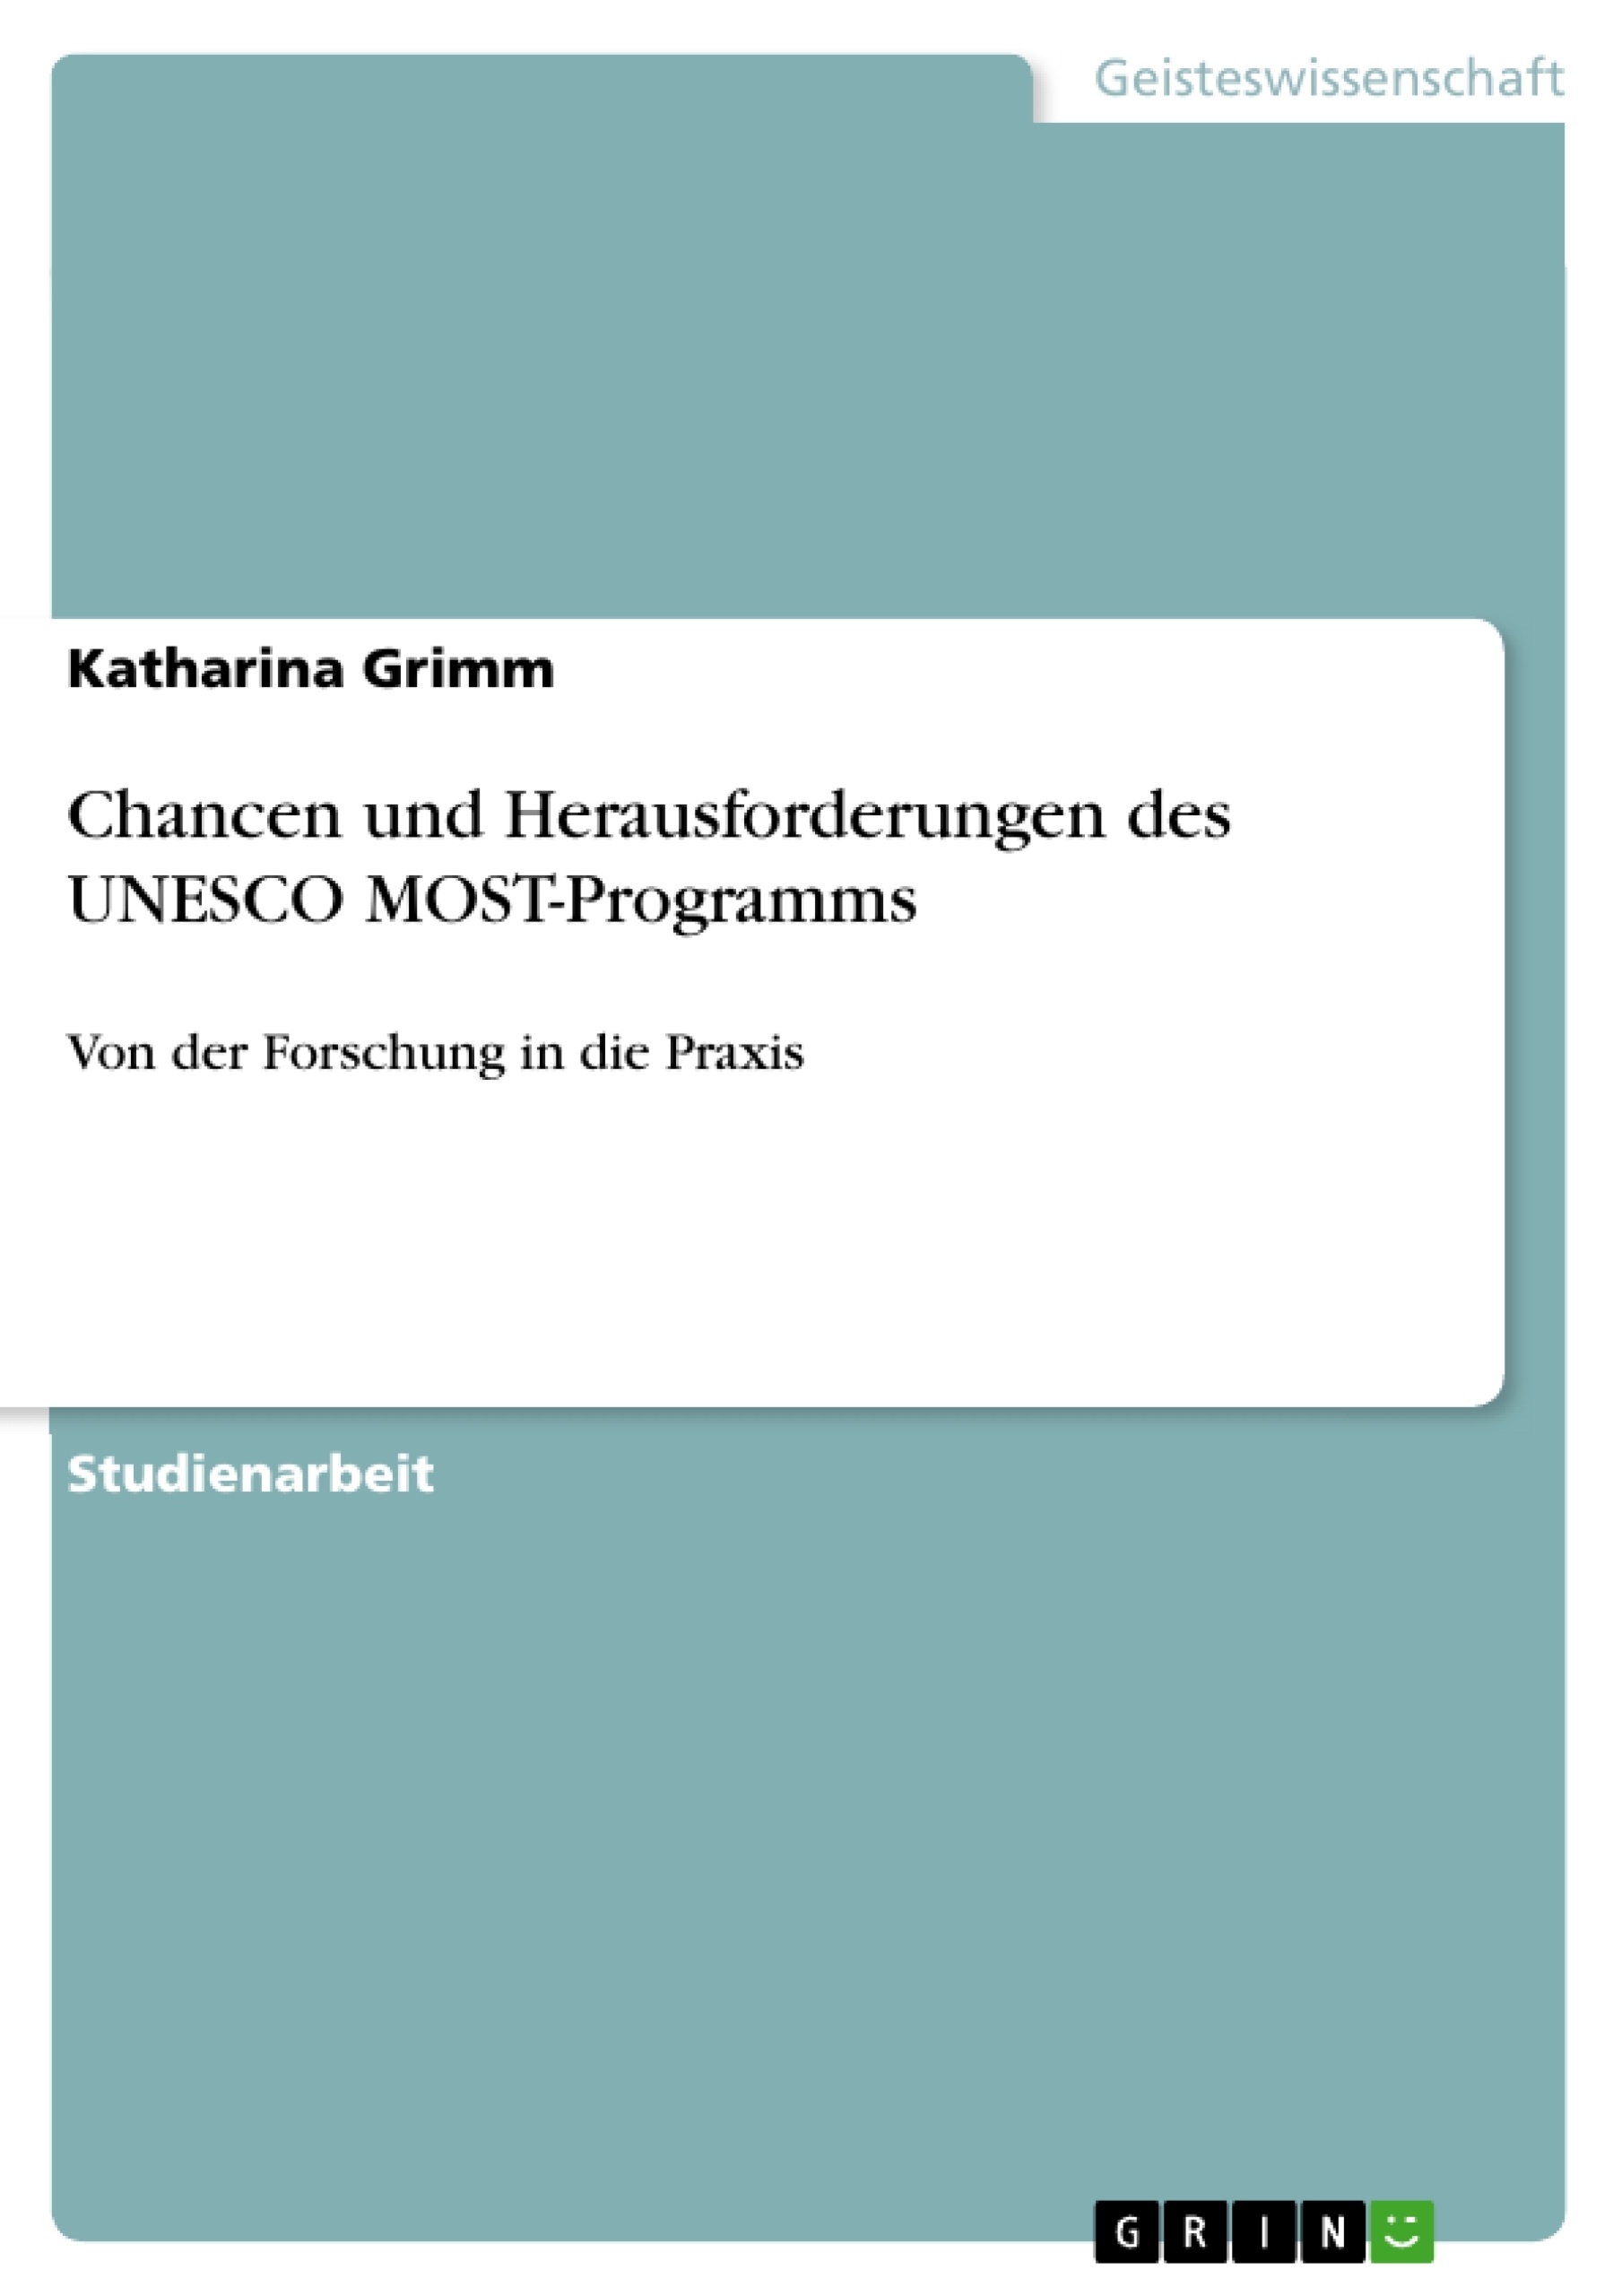 Título: Chancen und Herausforderungen des UNESCO MOST-Programms